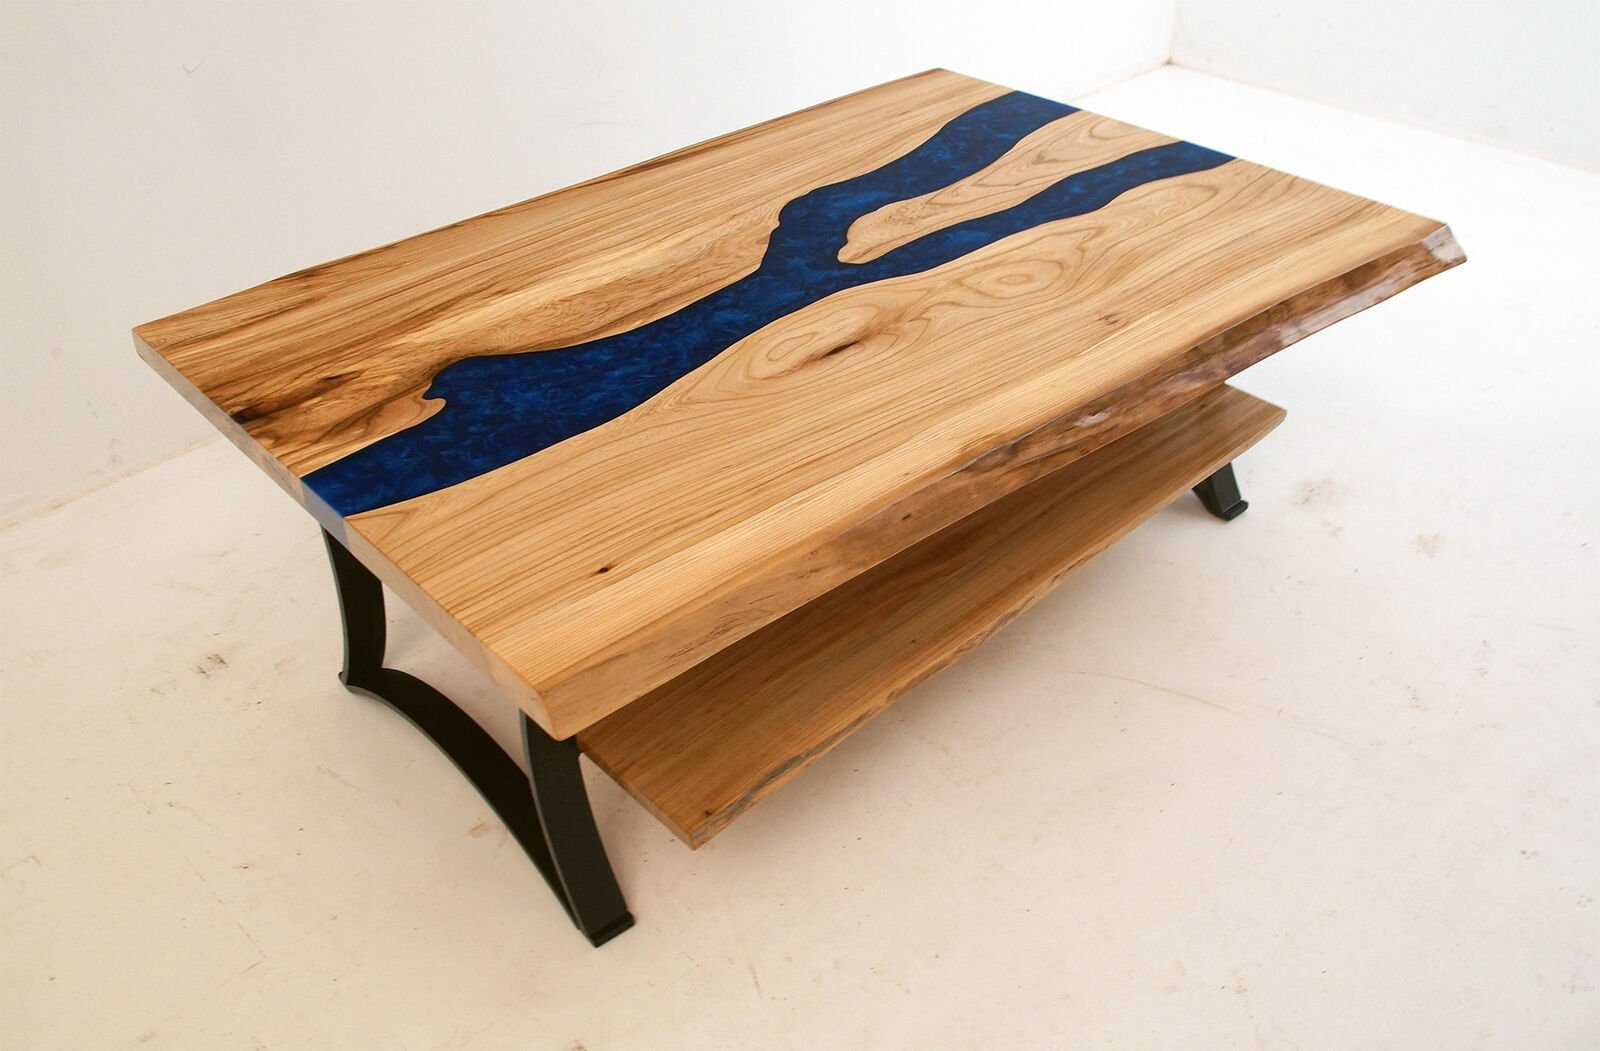 JVmoebel Couchtisch Couchtisch River River Tische Massiv Epoxidharz Holz Epoxidharz Massiv Echtes Couchtisch Echtes Tische, Holz Table Table